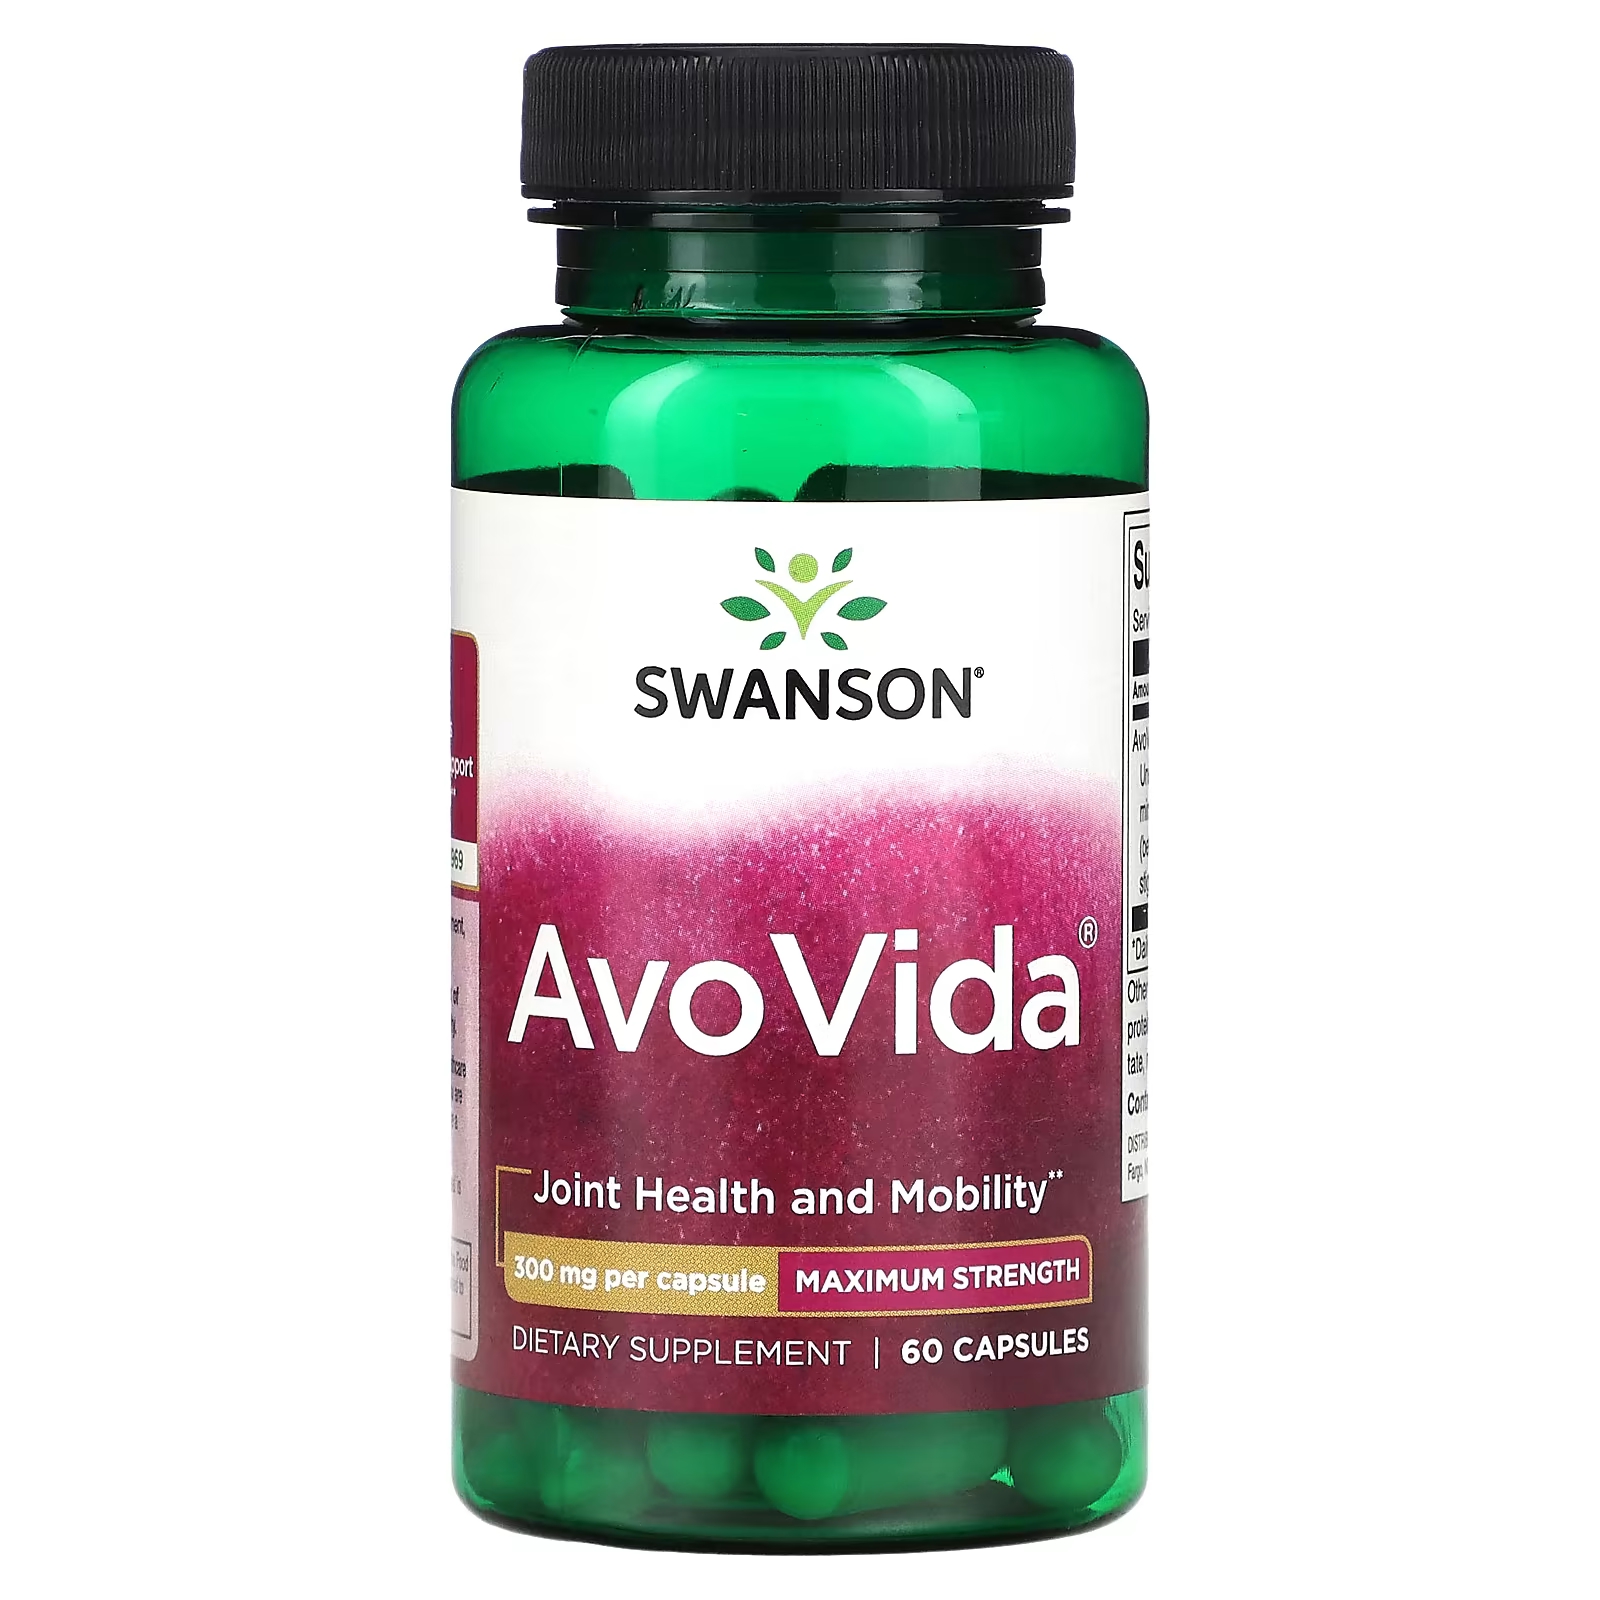 Пищевая добавка Swanson AvoVida максимальная сила, 60 капсул пищевая добавка snap supplements olive leaf максимальная сила 60 капсул